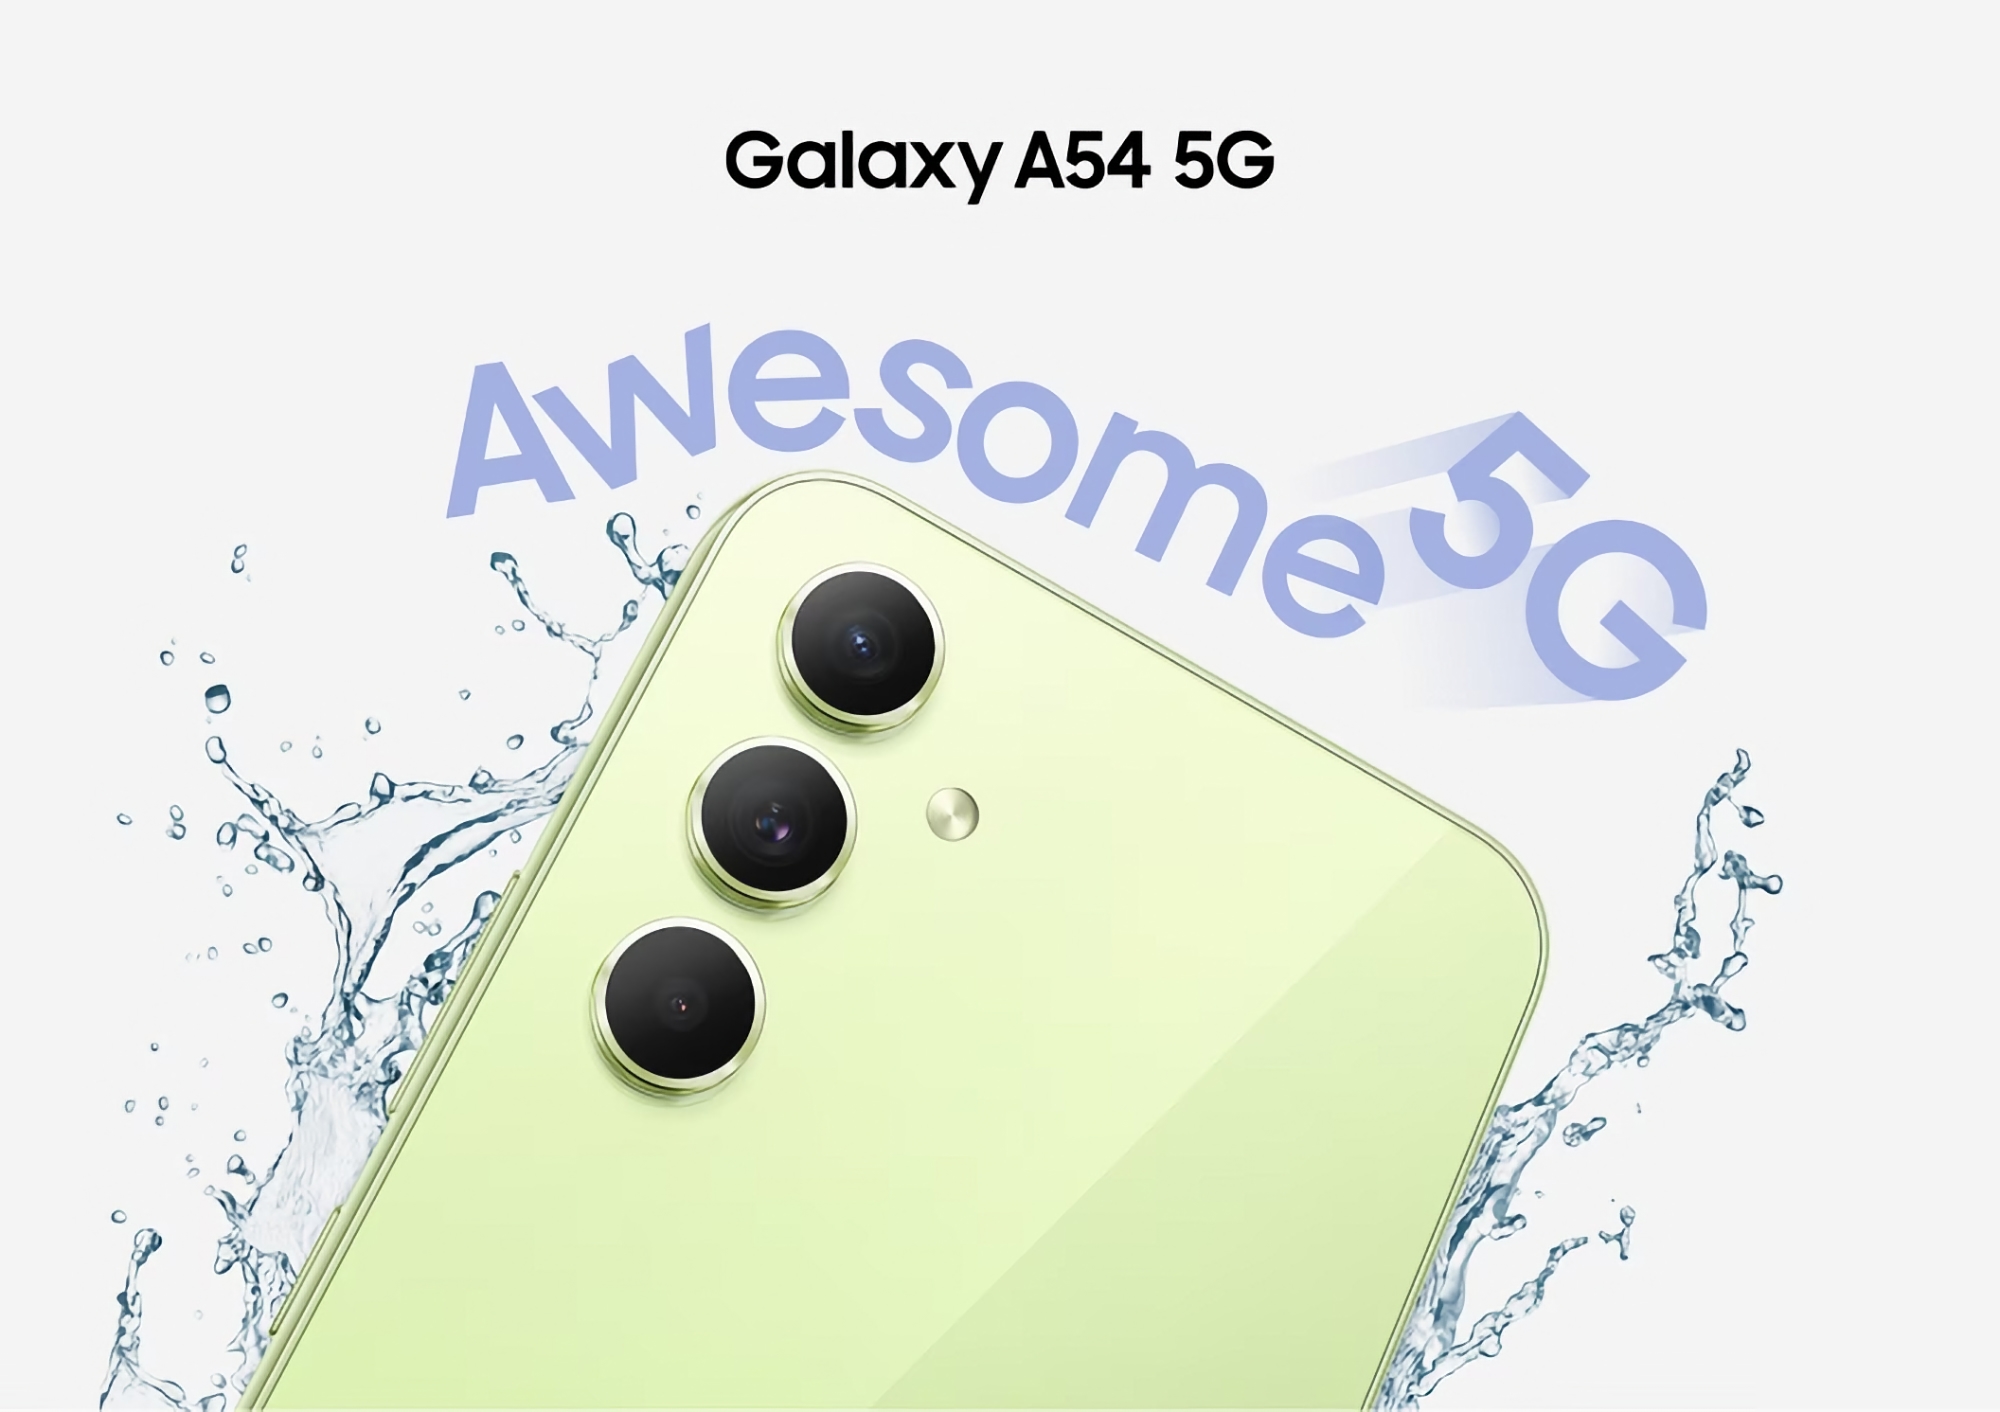 Ikke kun Galaxy Buds 2: Samsung Galaxy A54 5G er også tilgængelig på Amazon til en kampagnepris